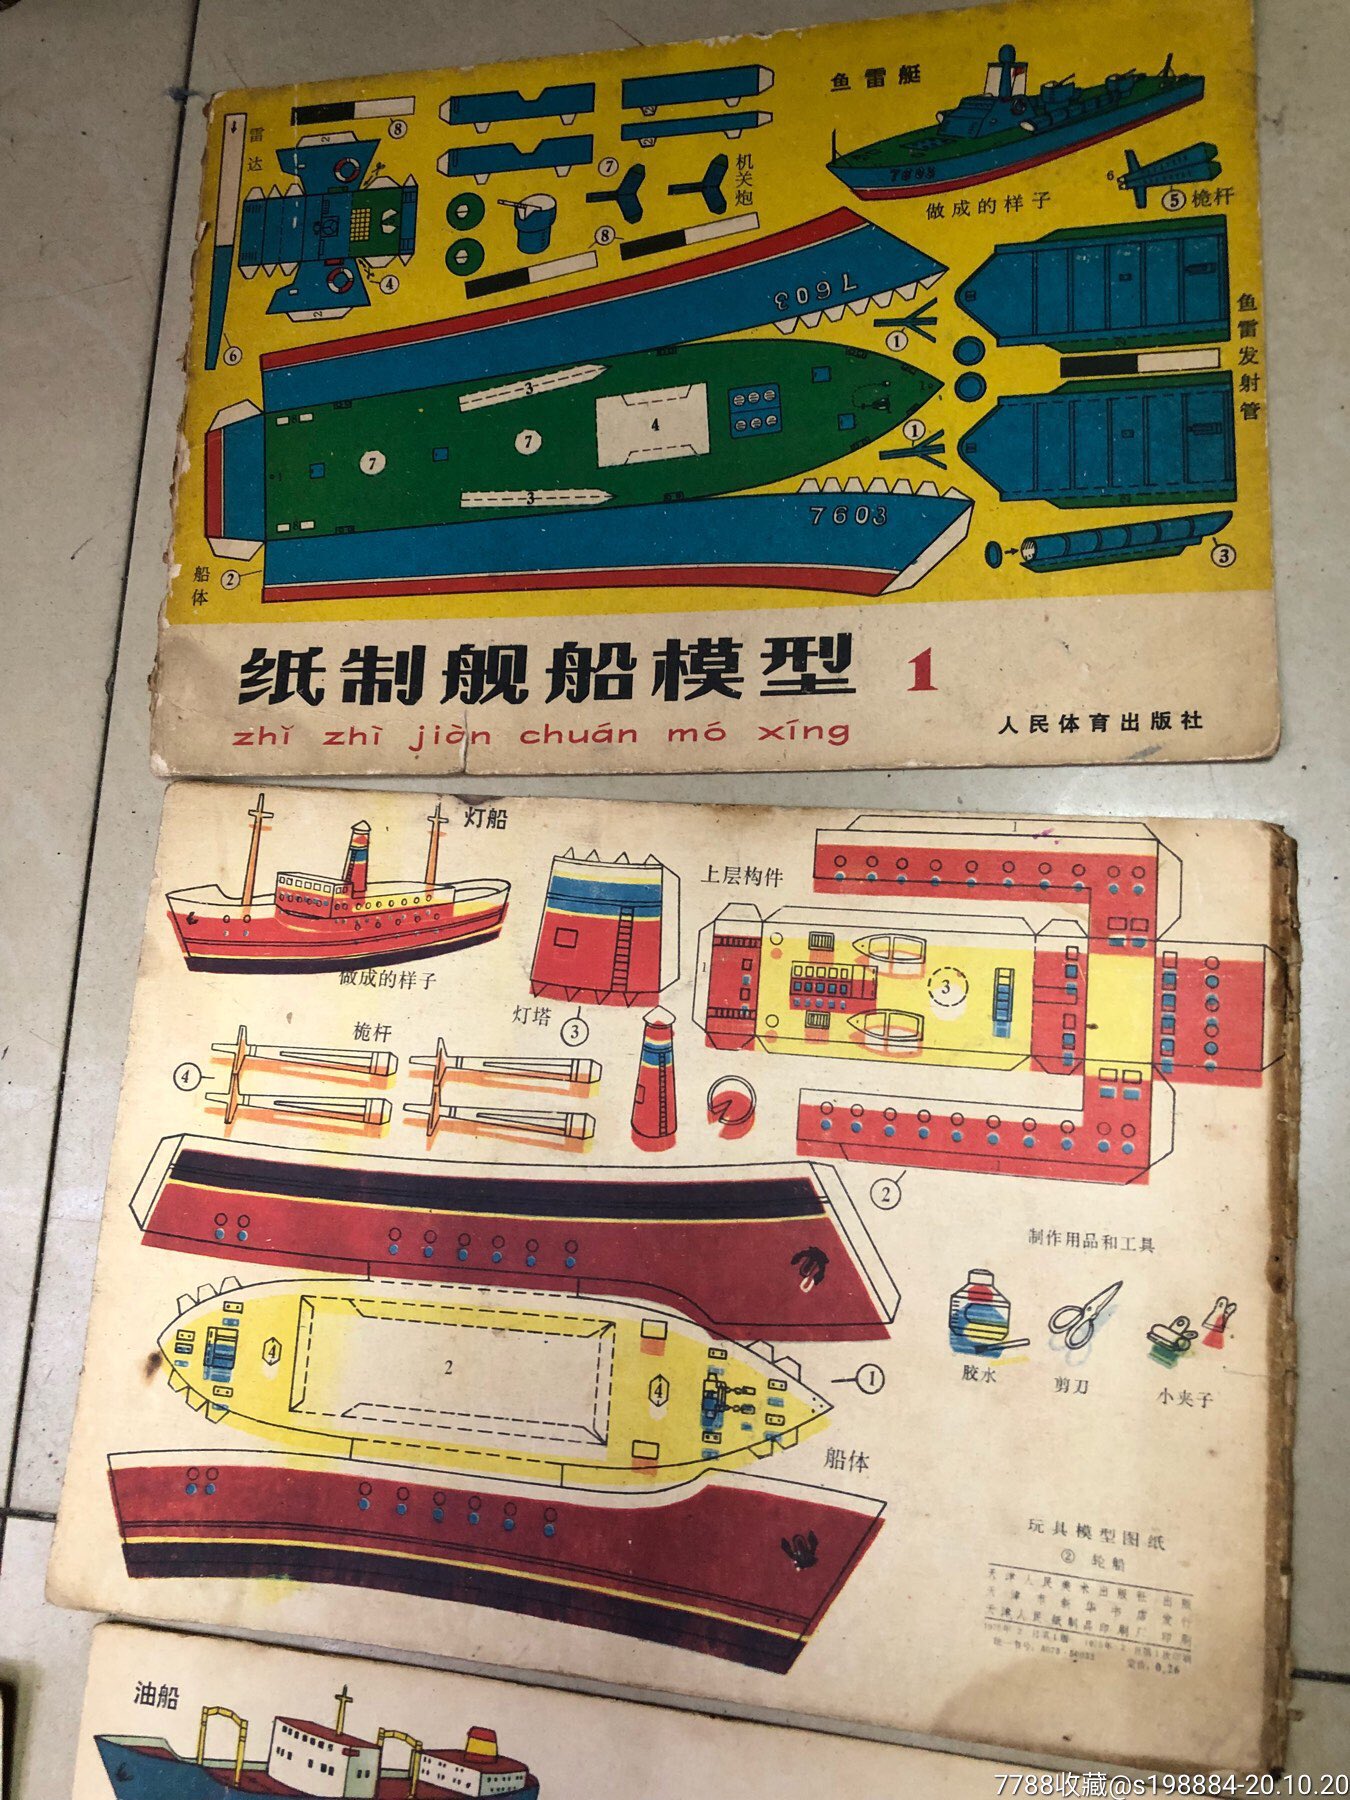 纸制舰船模型1,玩具模型图纸2